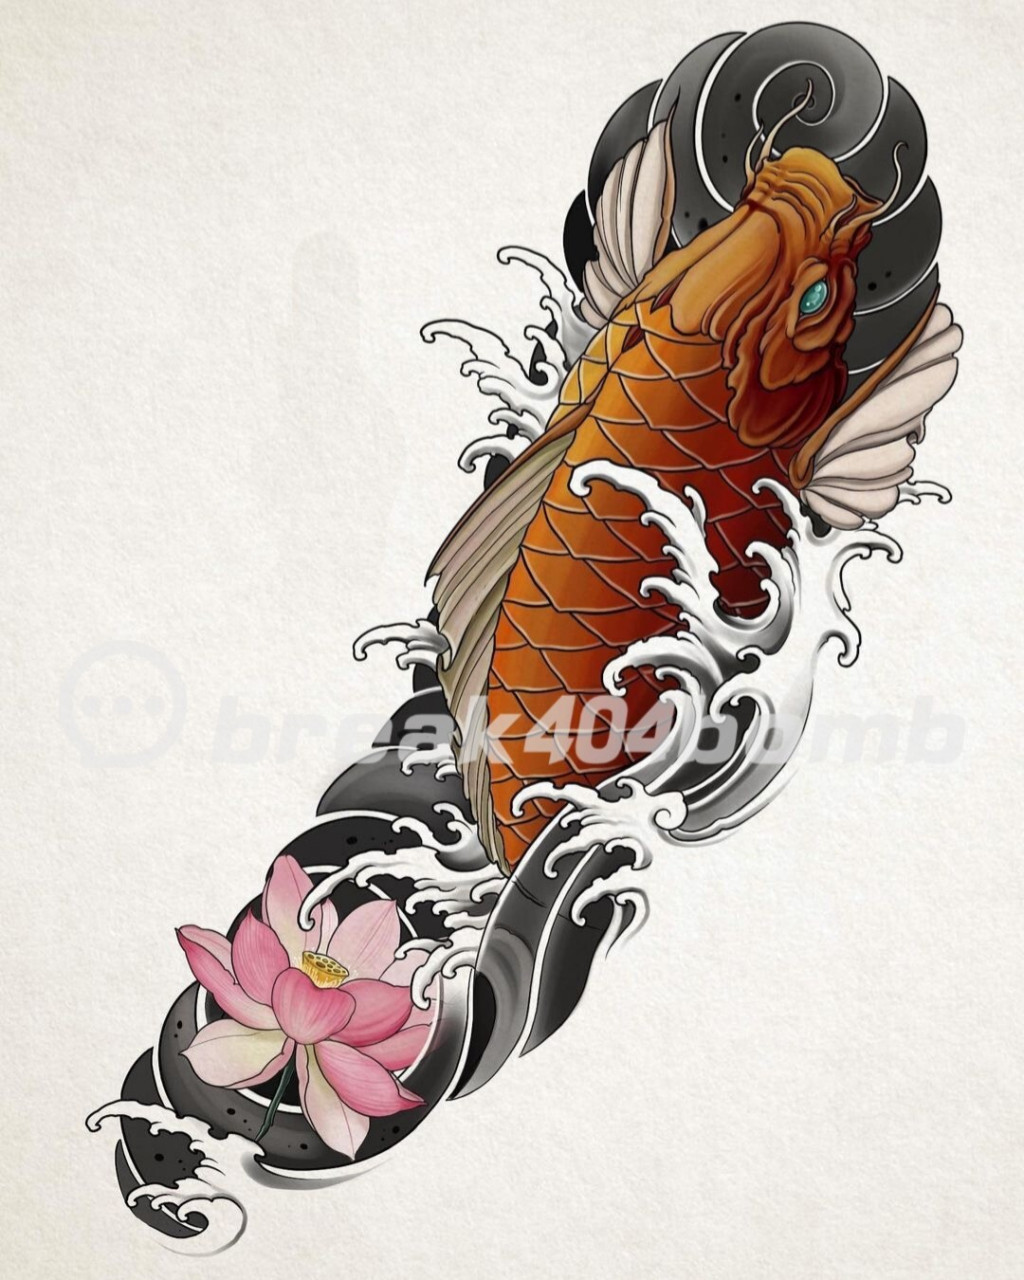 花臂老传统纹身手稿丨鲤鱼 遮盖花臂素材 [得意]大气耐看的老传统纹身